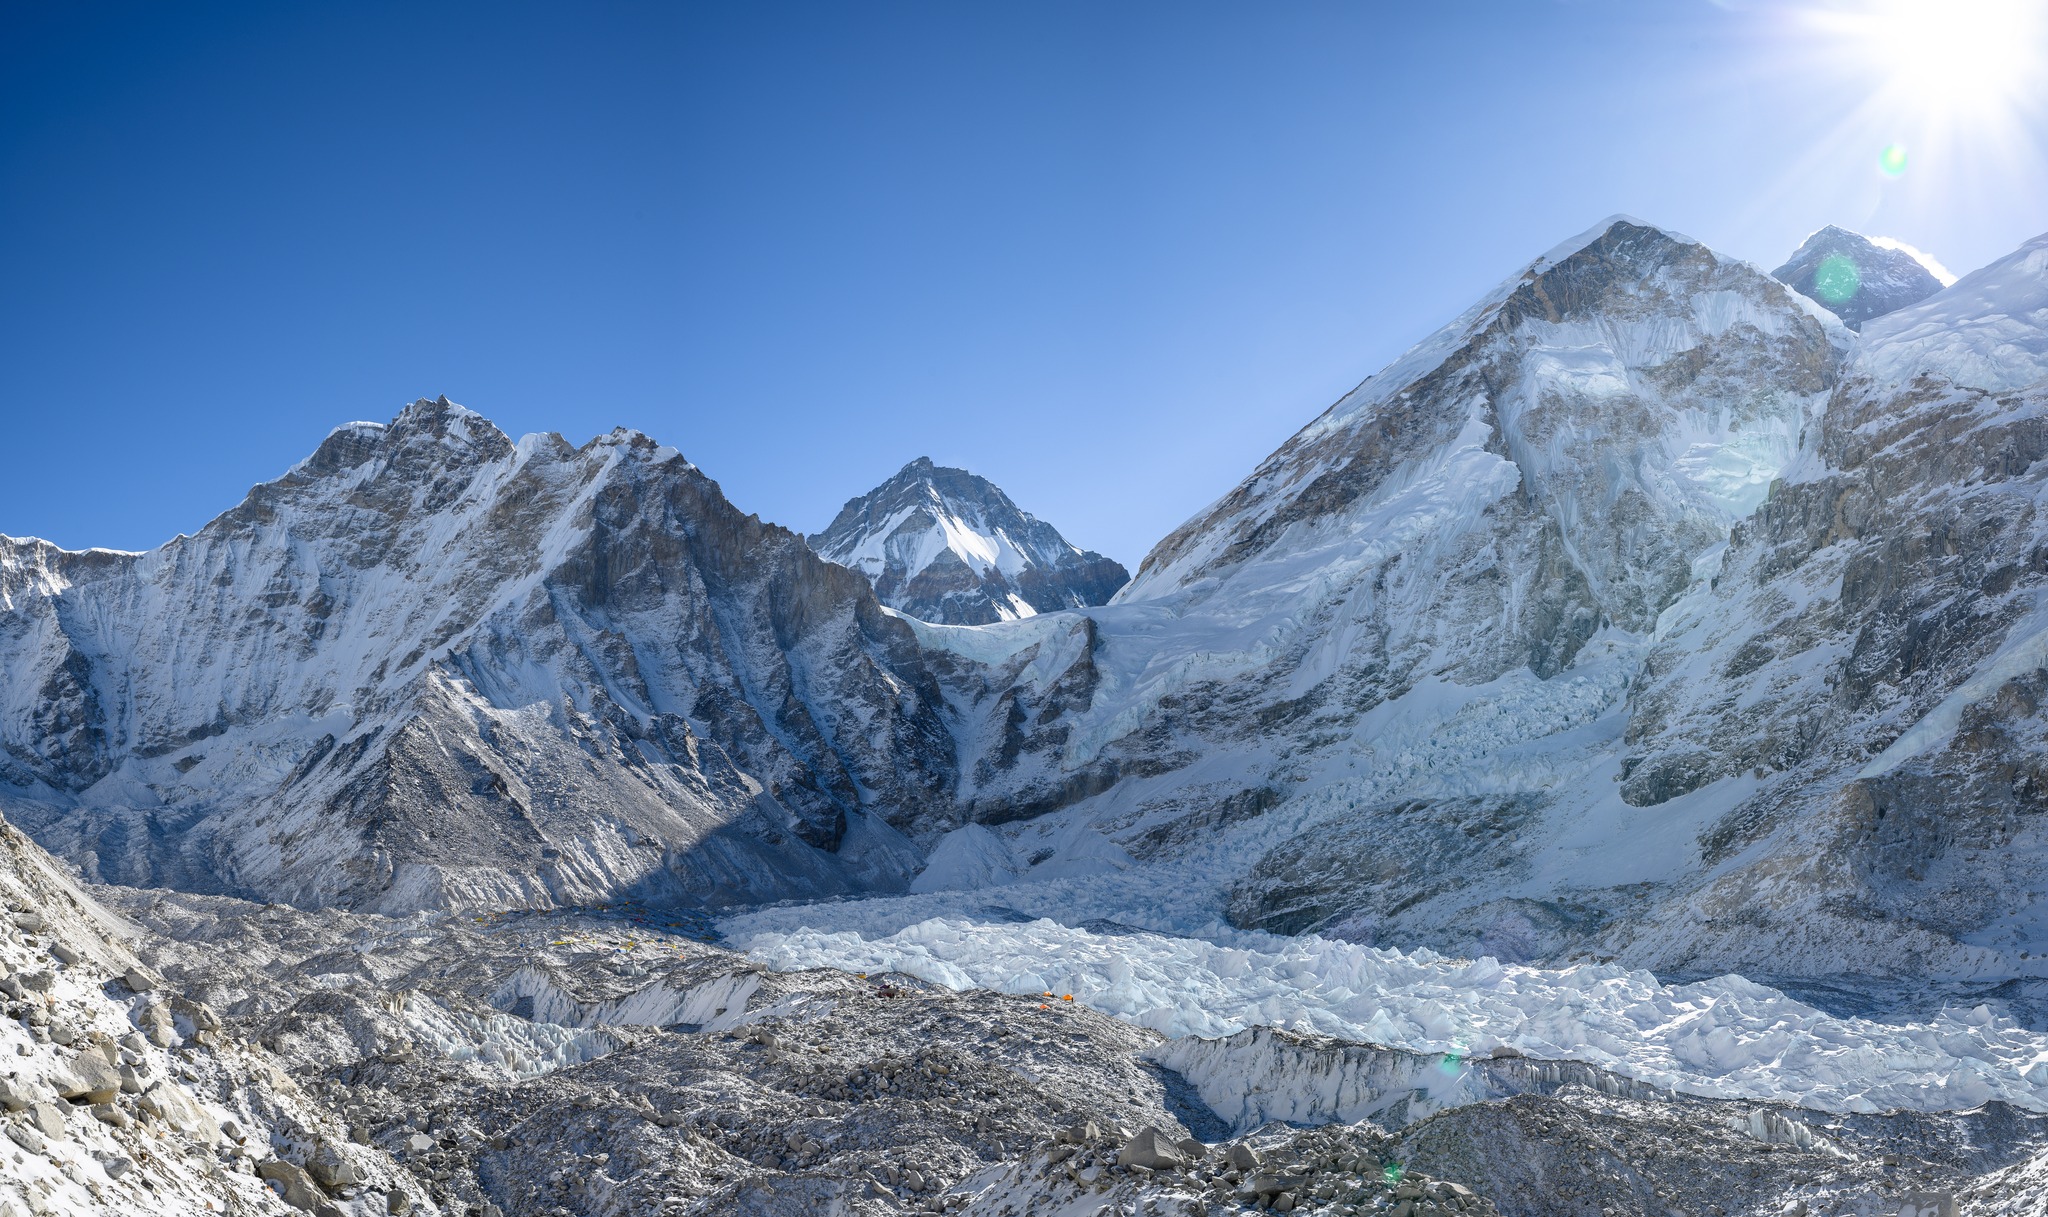 Registered Trekking Guide is compulsory for Trekking in Nepal